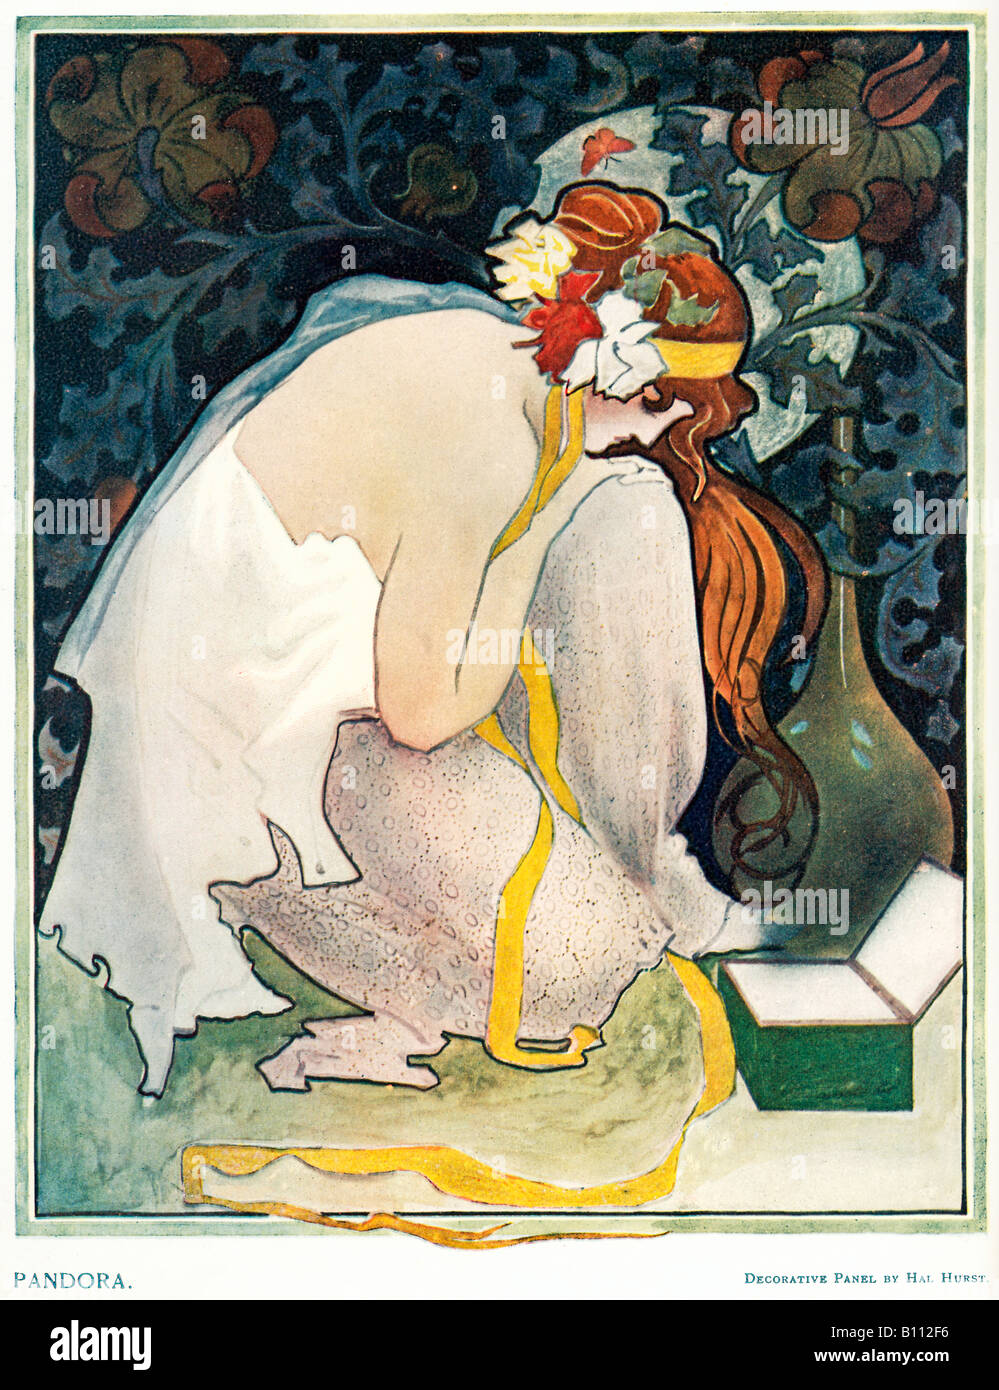 Pandora 1899 Art Nouveau dekorative Systemsteuerung von Hal Hurst der ersten menschlichen Frau blicken wehmütig auf Ihr leeres Feld Stockfoto